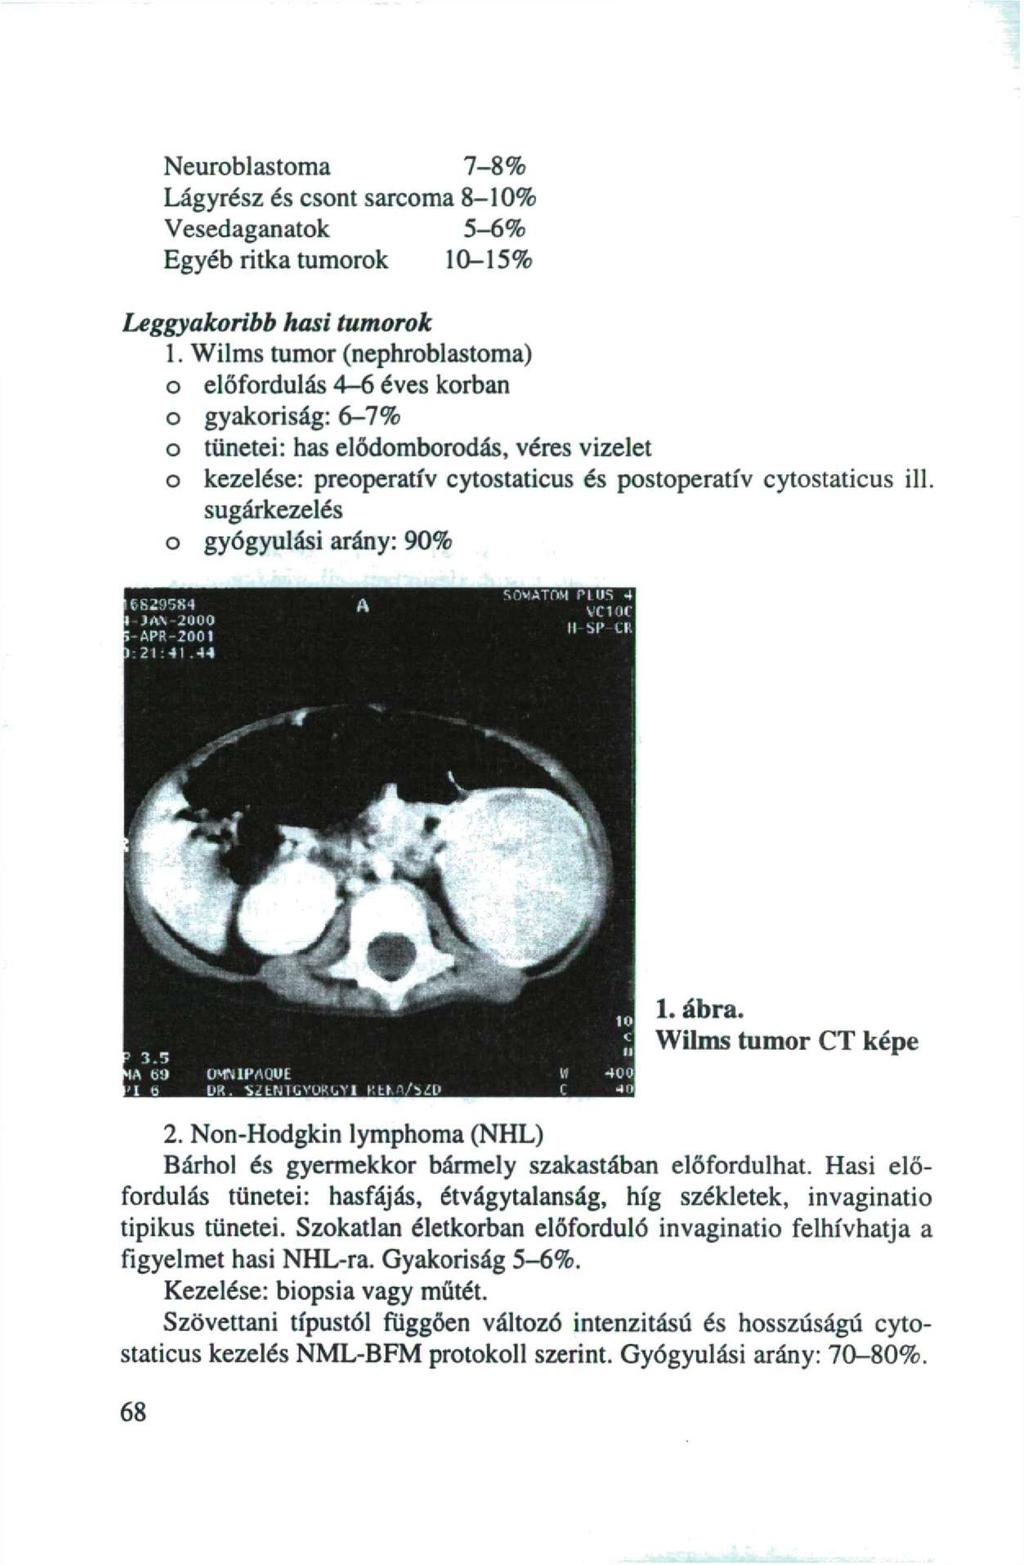 Neuroblastoma 7-8% Lágyrész és csont sarcoma 8-10% Vesedaganatok 5-6% Egyéb ritka tumorok 10-15% Leggyakoribb hasi tumorok 1.